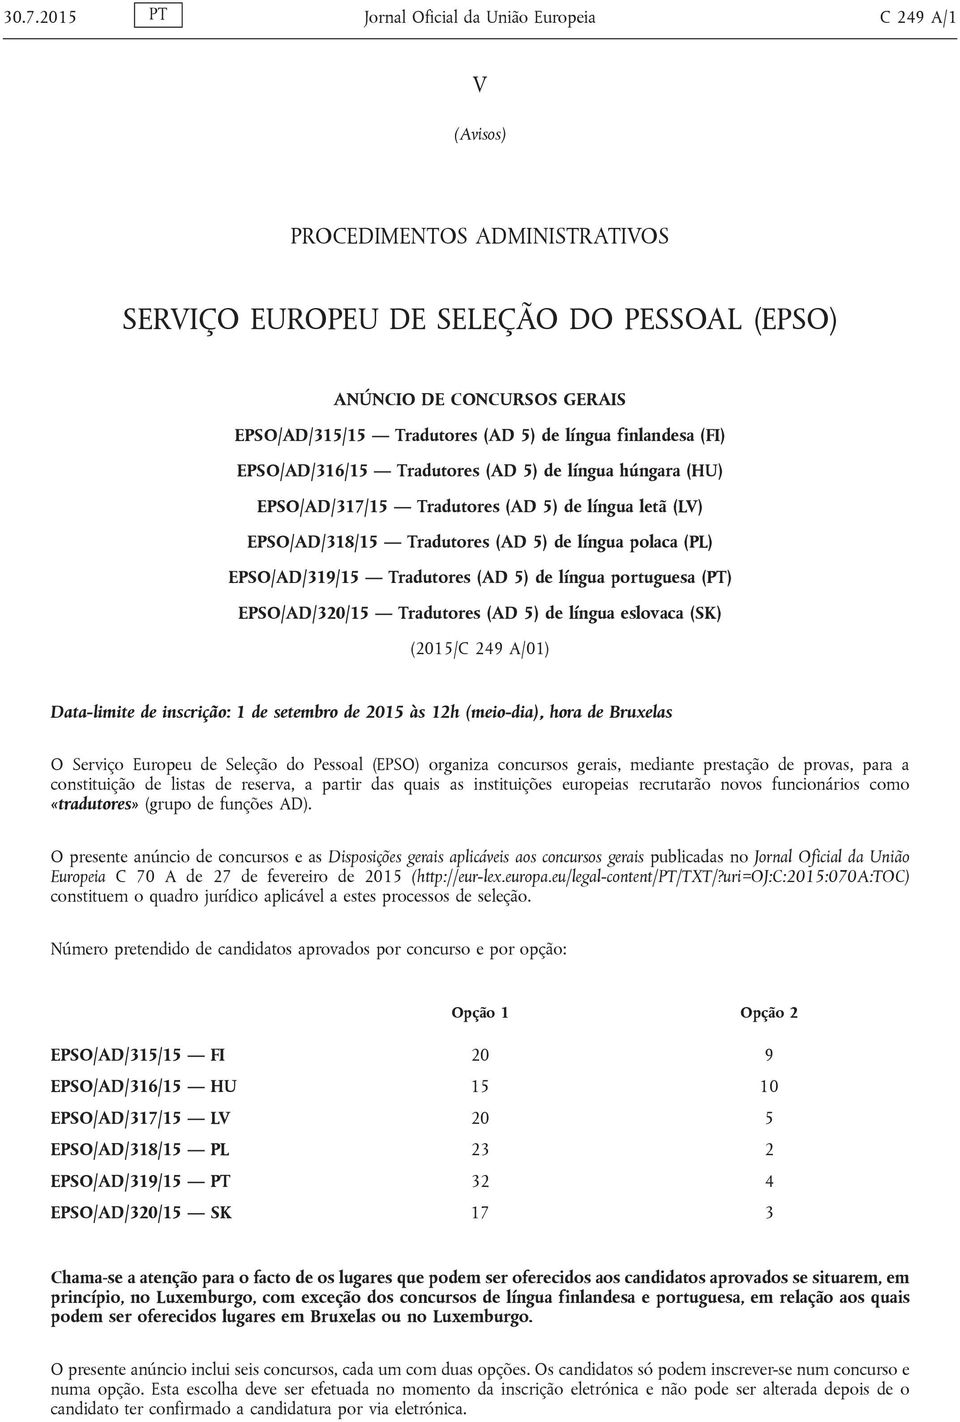 EPSO/AD/319/15 Tradutores (AD 5) de língua portuguesa (PT) EPSO/AD/320/15 Tradutores (AD 5) de língua eslovaca (SK) (2015/C 249 A/01) Data-limite de inscrição: 1 de setembro de 2015 às 12h